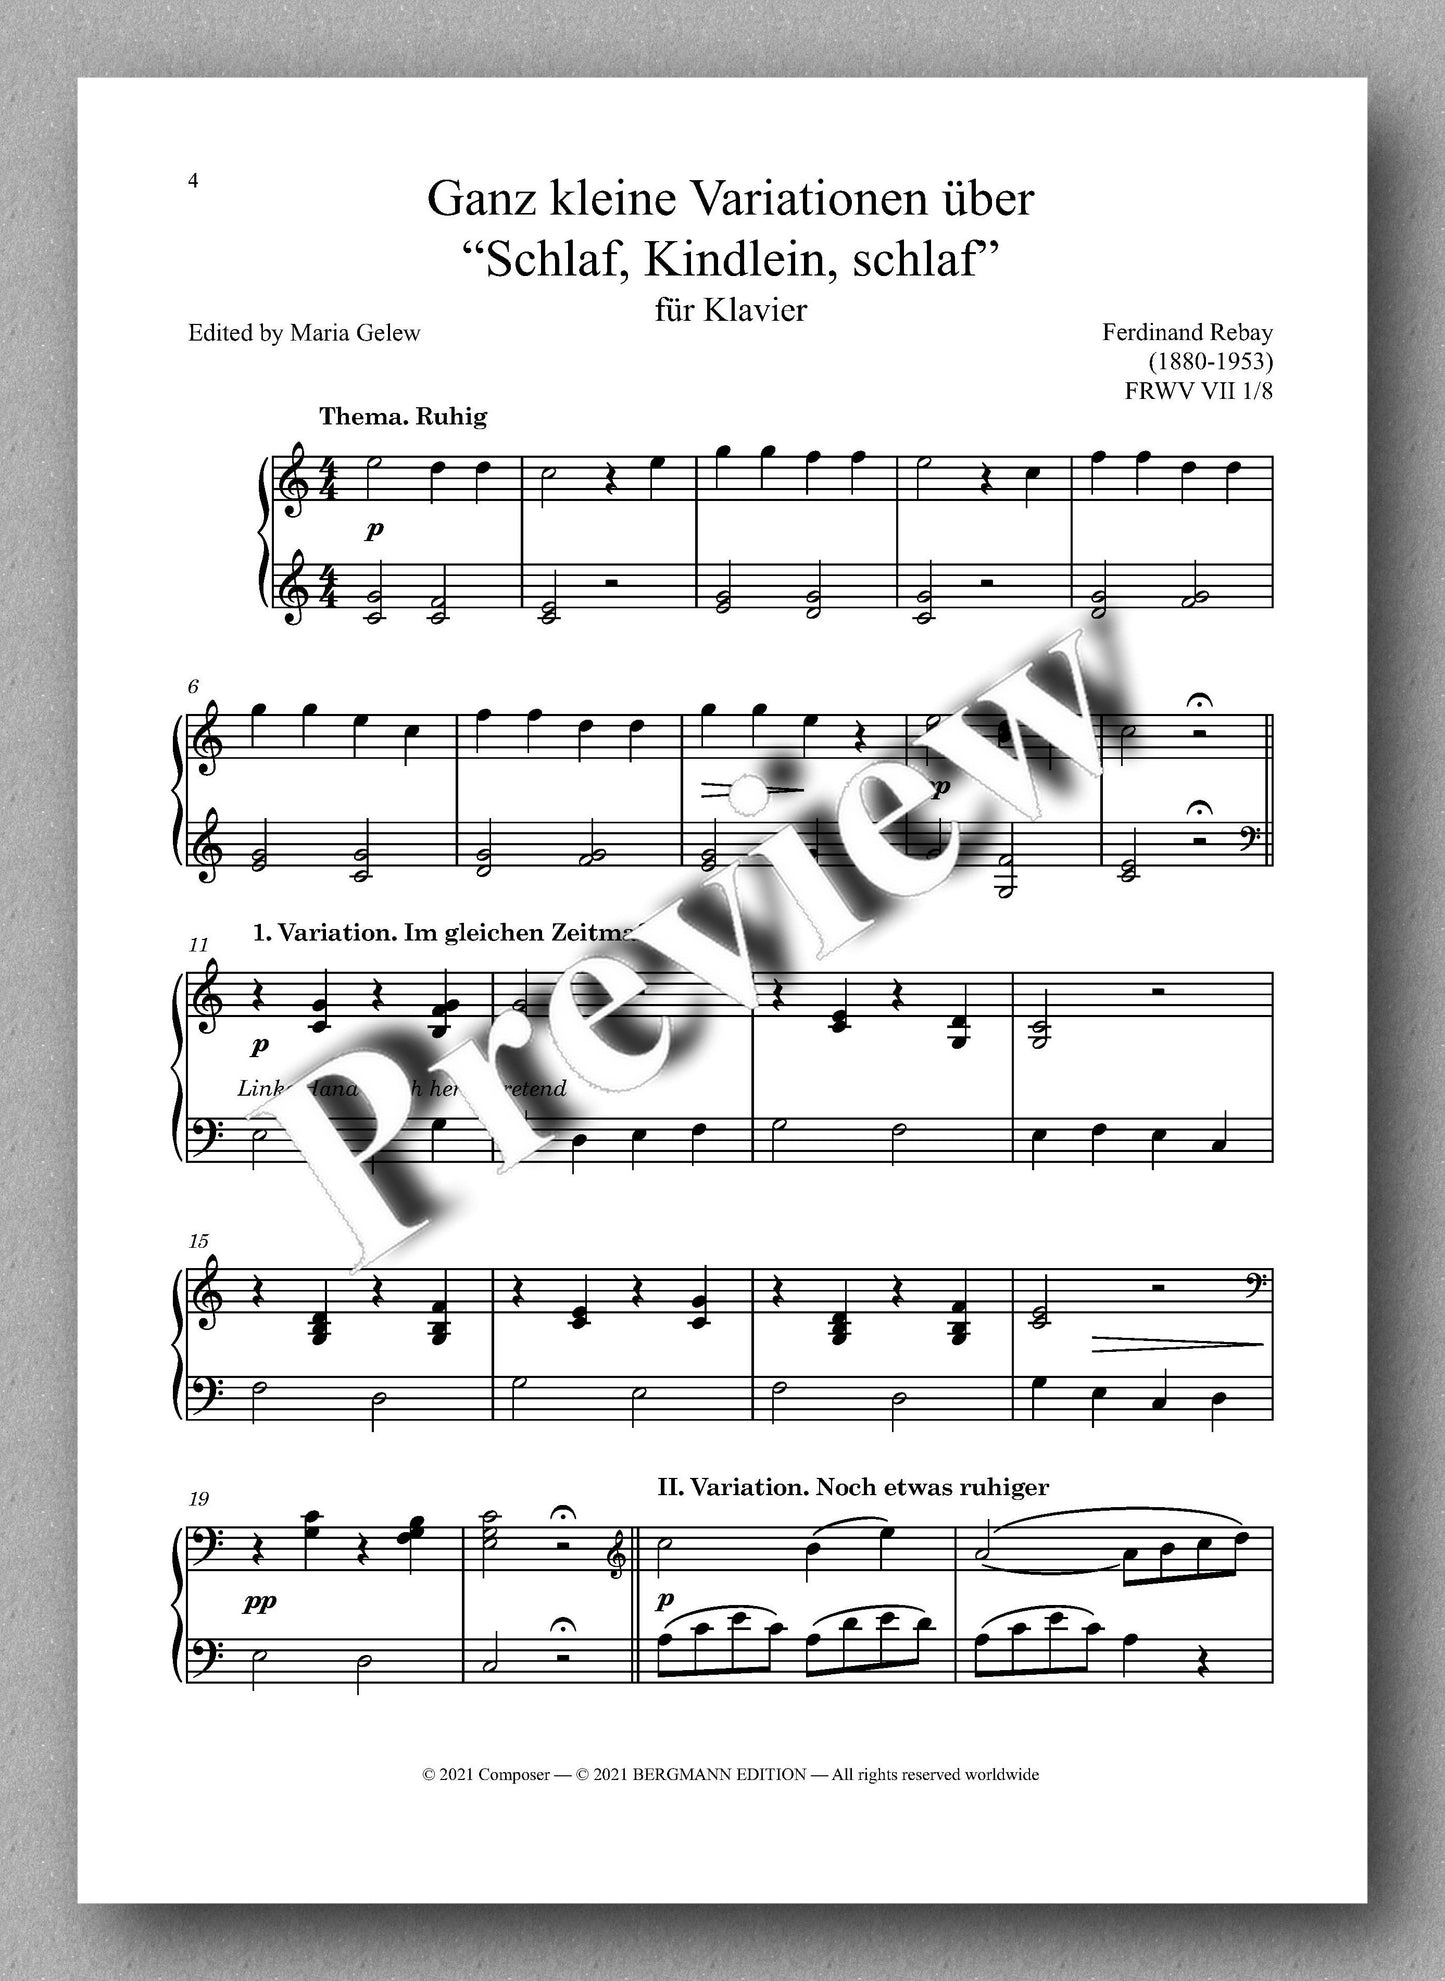 Ferdinand Rebay, Ganz kleine Variationen über “Schlaf, Kindlein, schlaf” & Sechs leichte Variationen über ein Kinderlied - music score 1